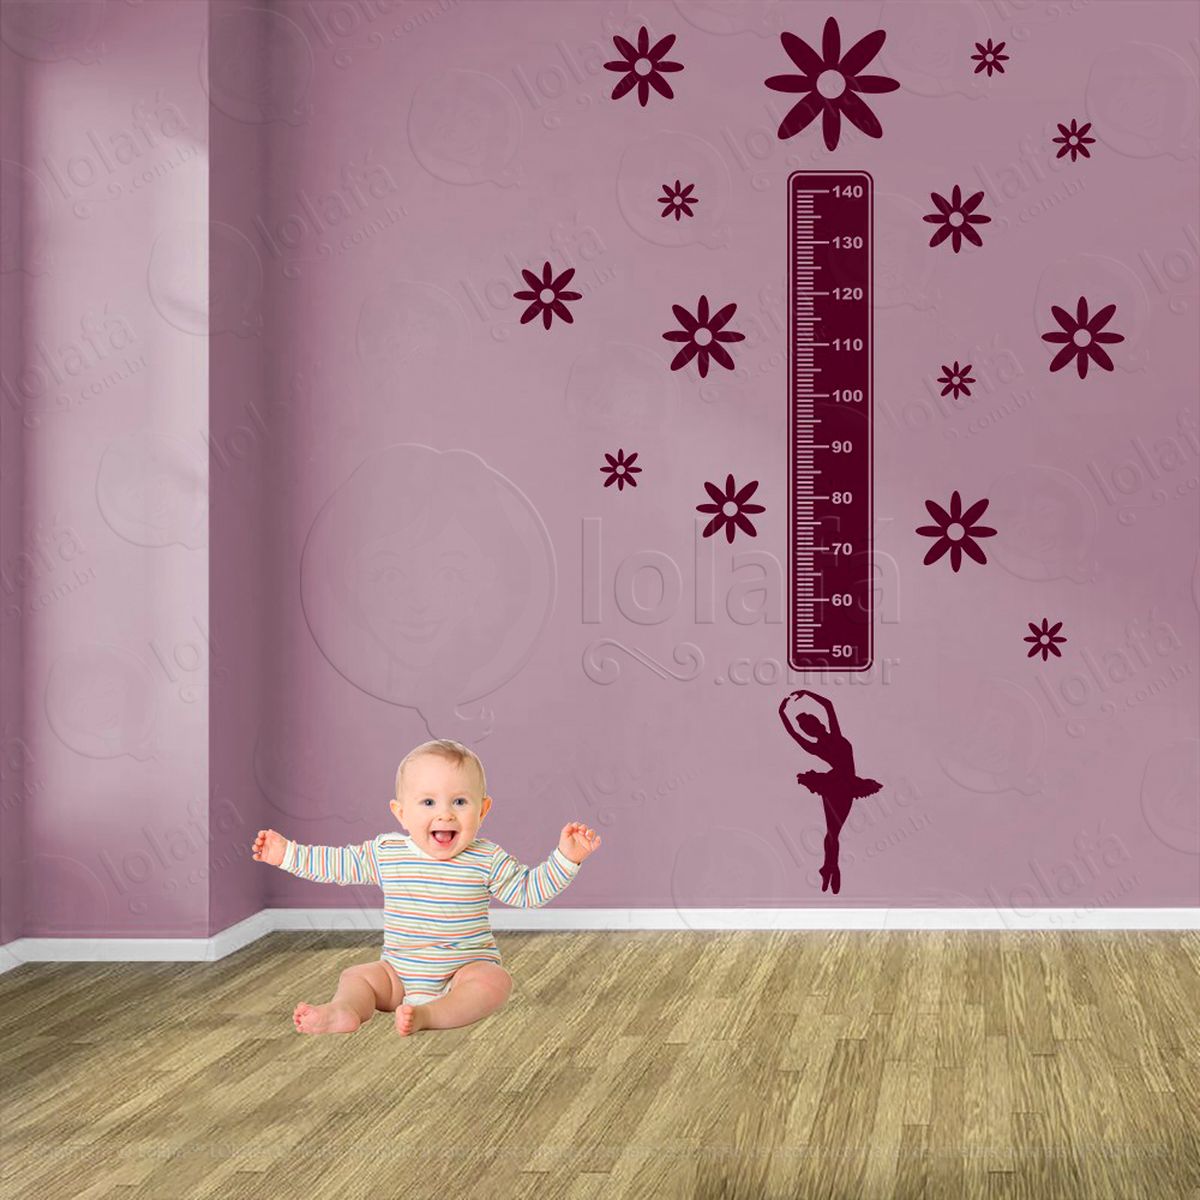 balé e flores adesivo régua de crescimento infantil, medidor de altura para quarto, porta e parede - mod:509